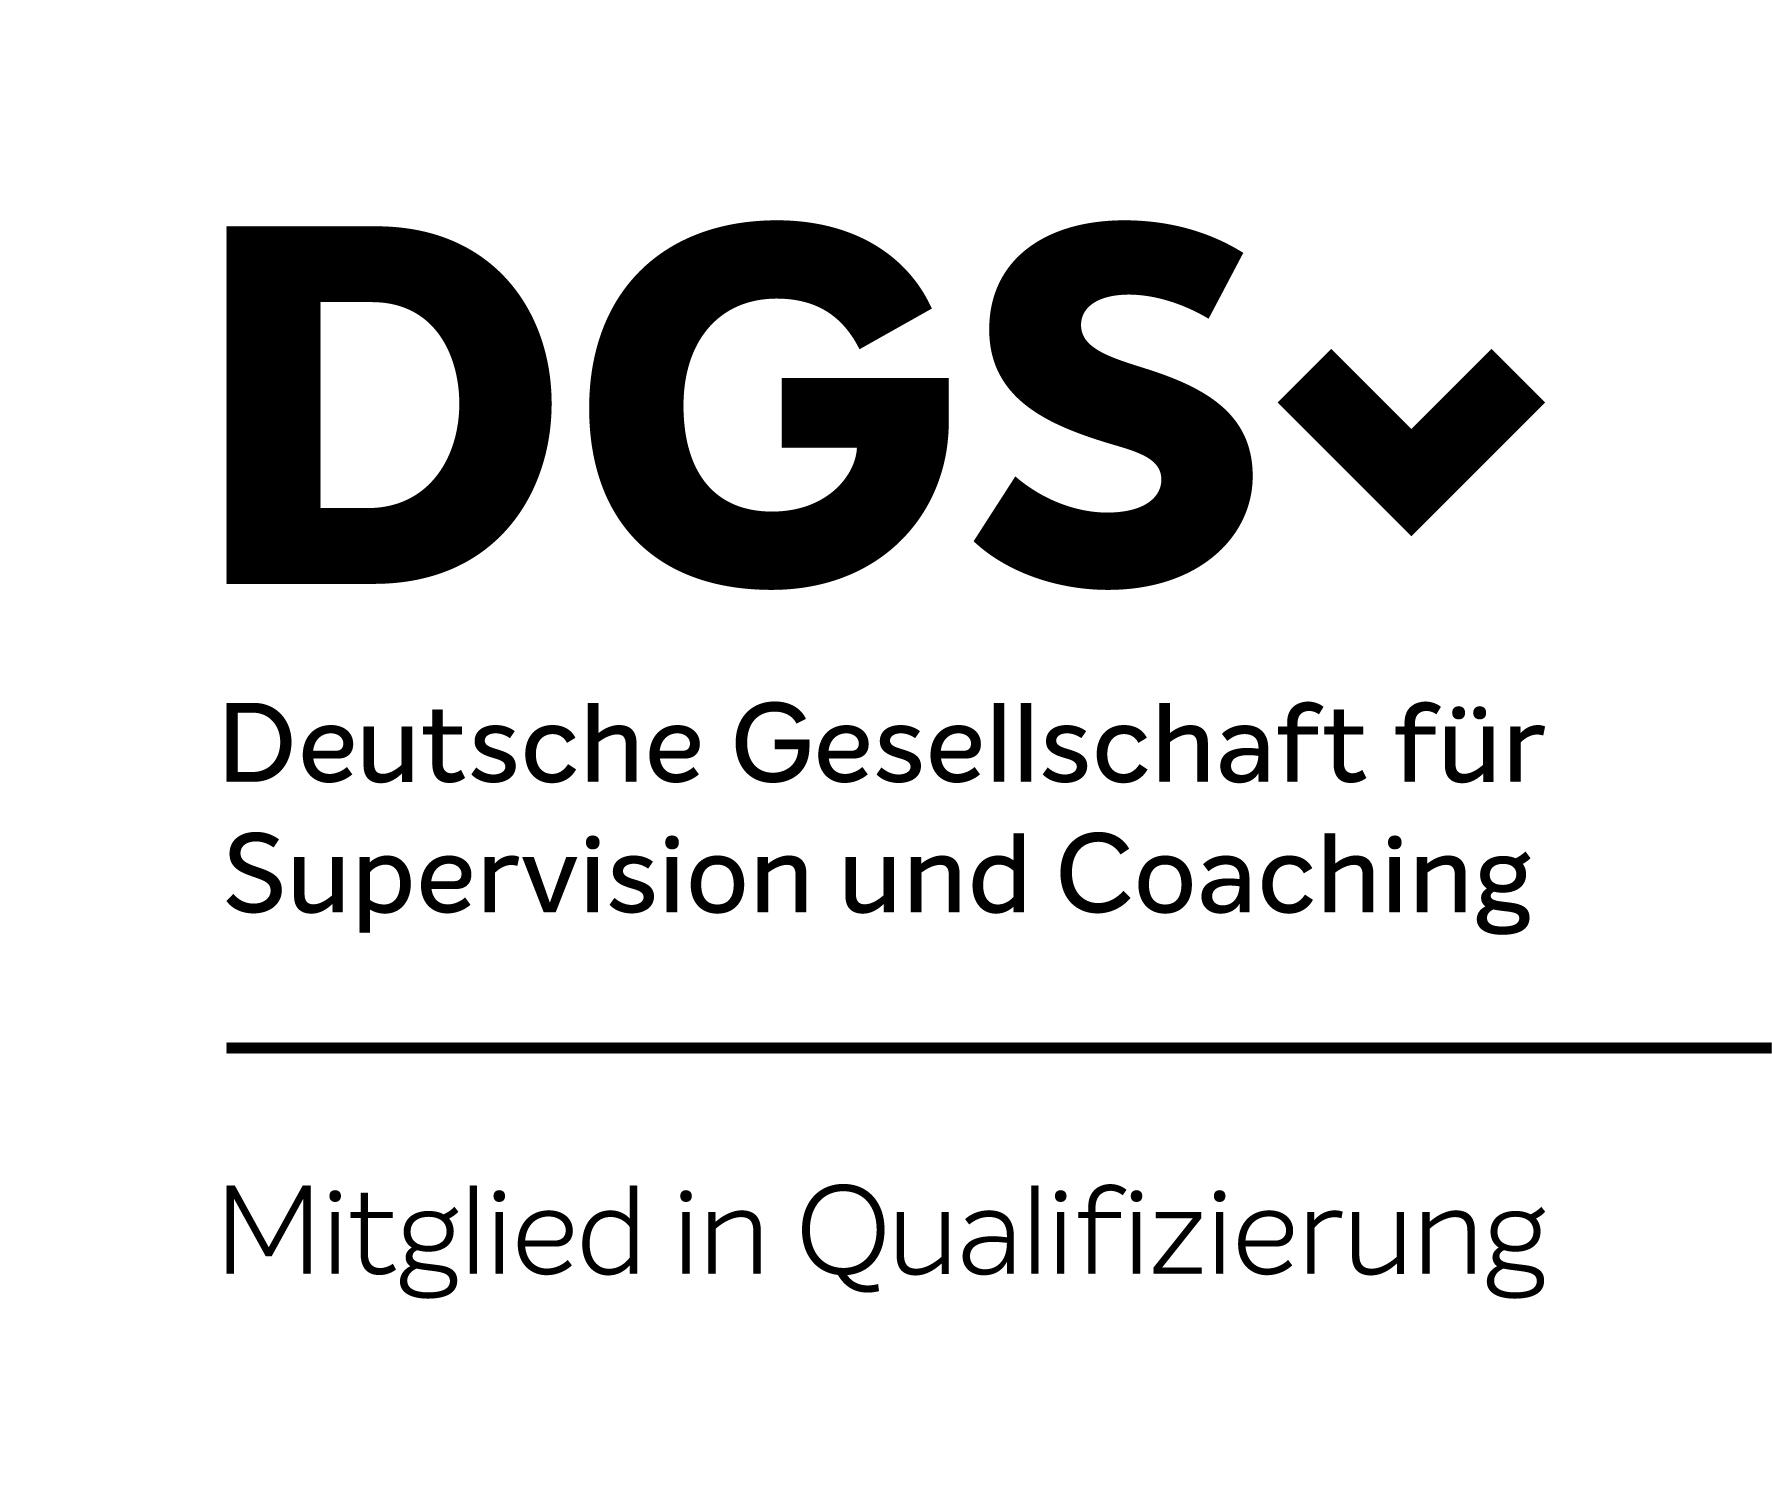 Deutsche Gesellschaft für Supervision und Coaching Logo